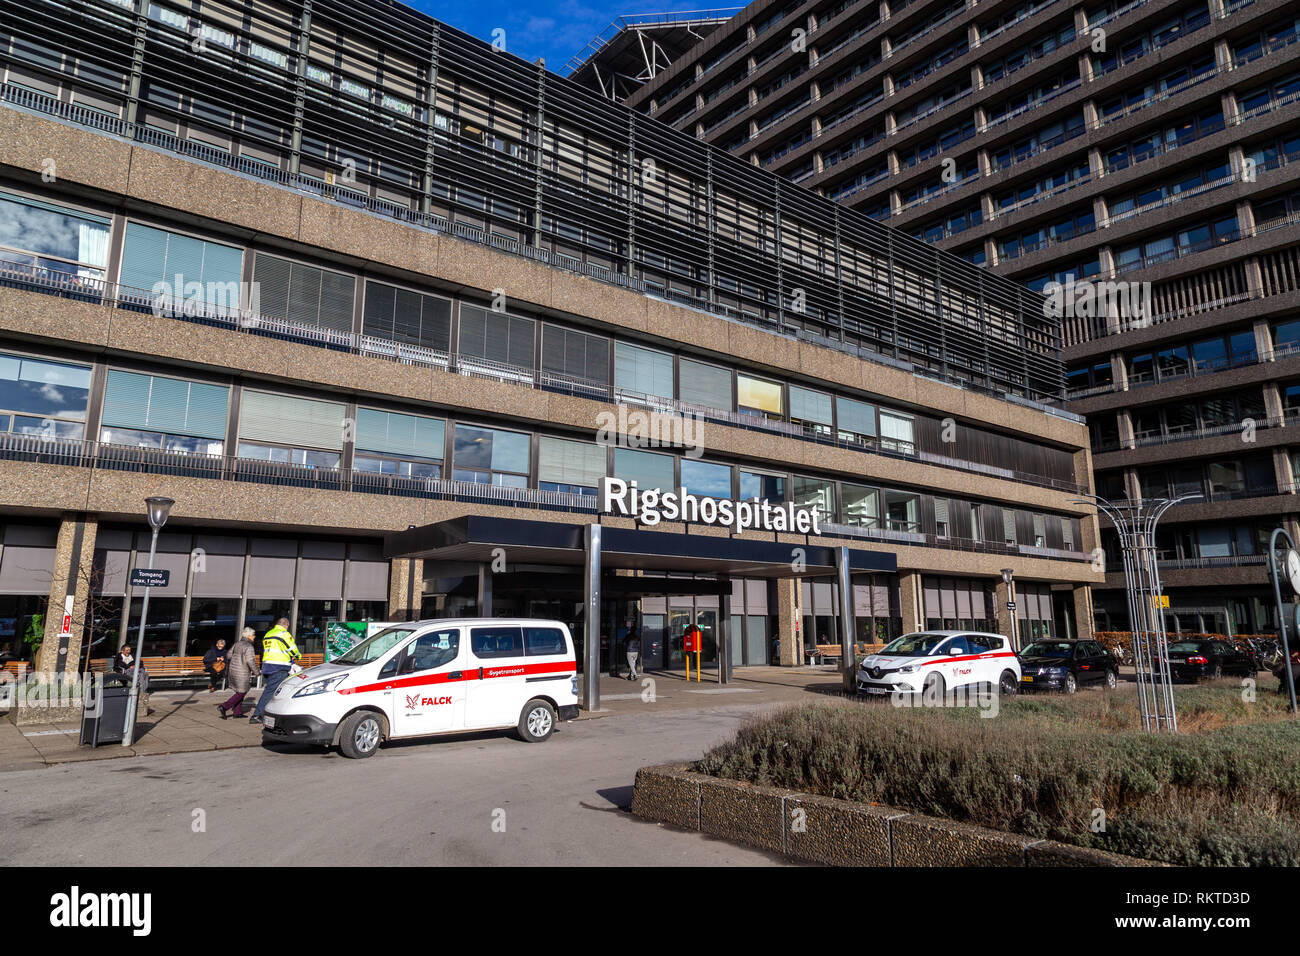 Rigshospitalet, hospital in Copenhagen, Denmark Stock Photo - Alamy